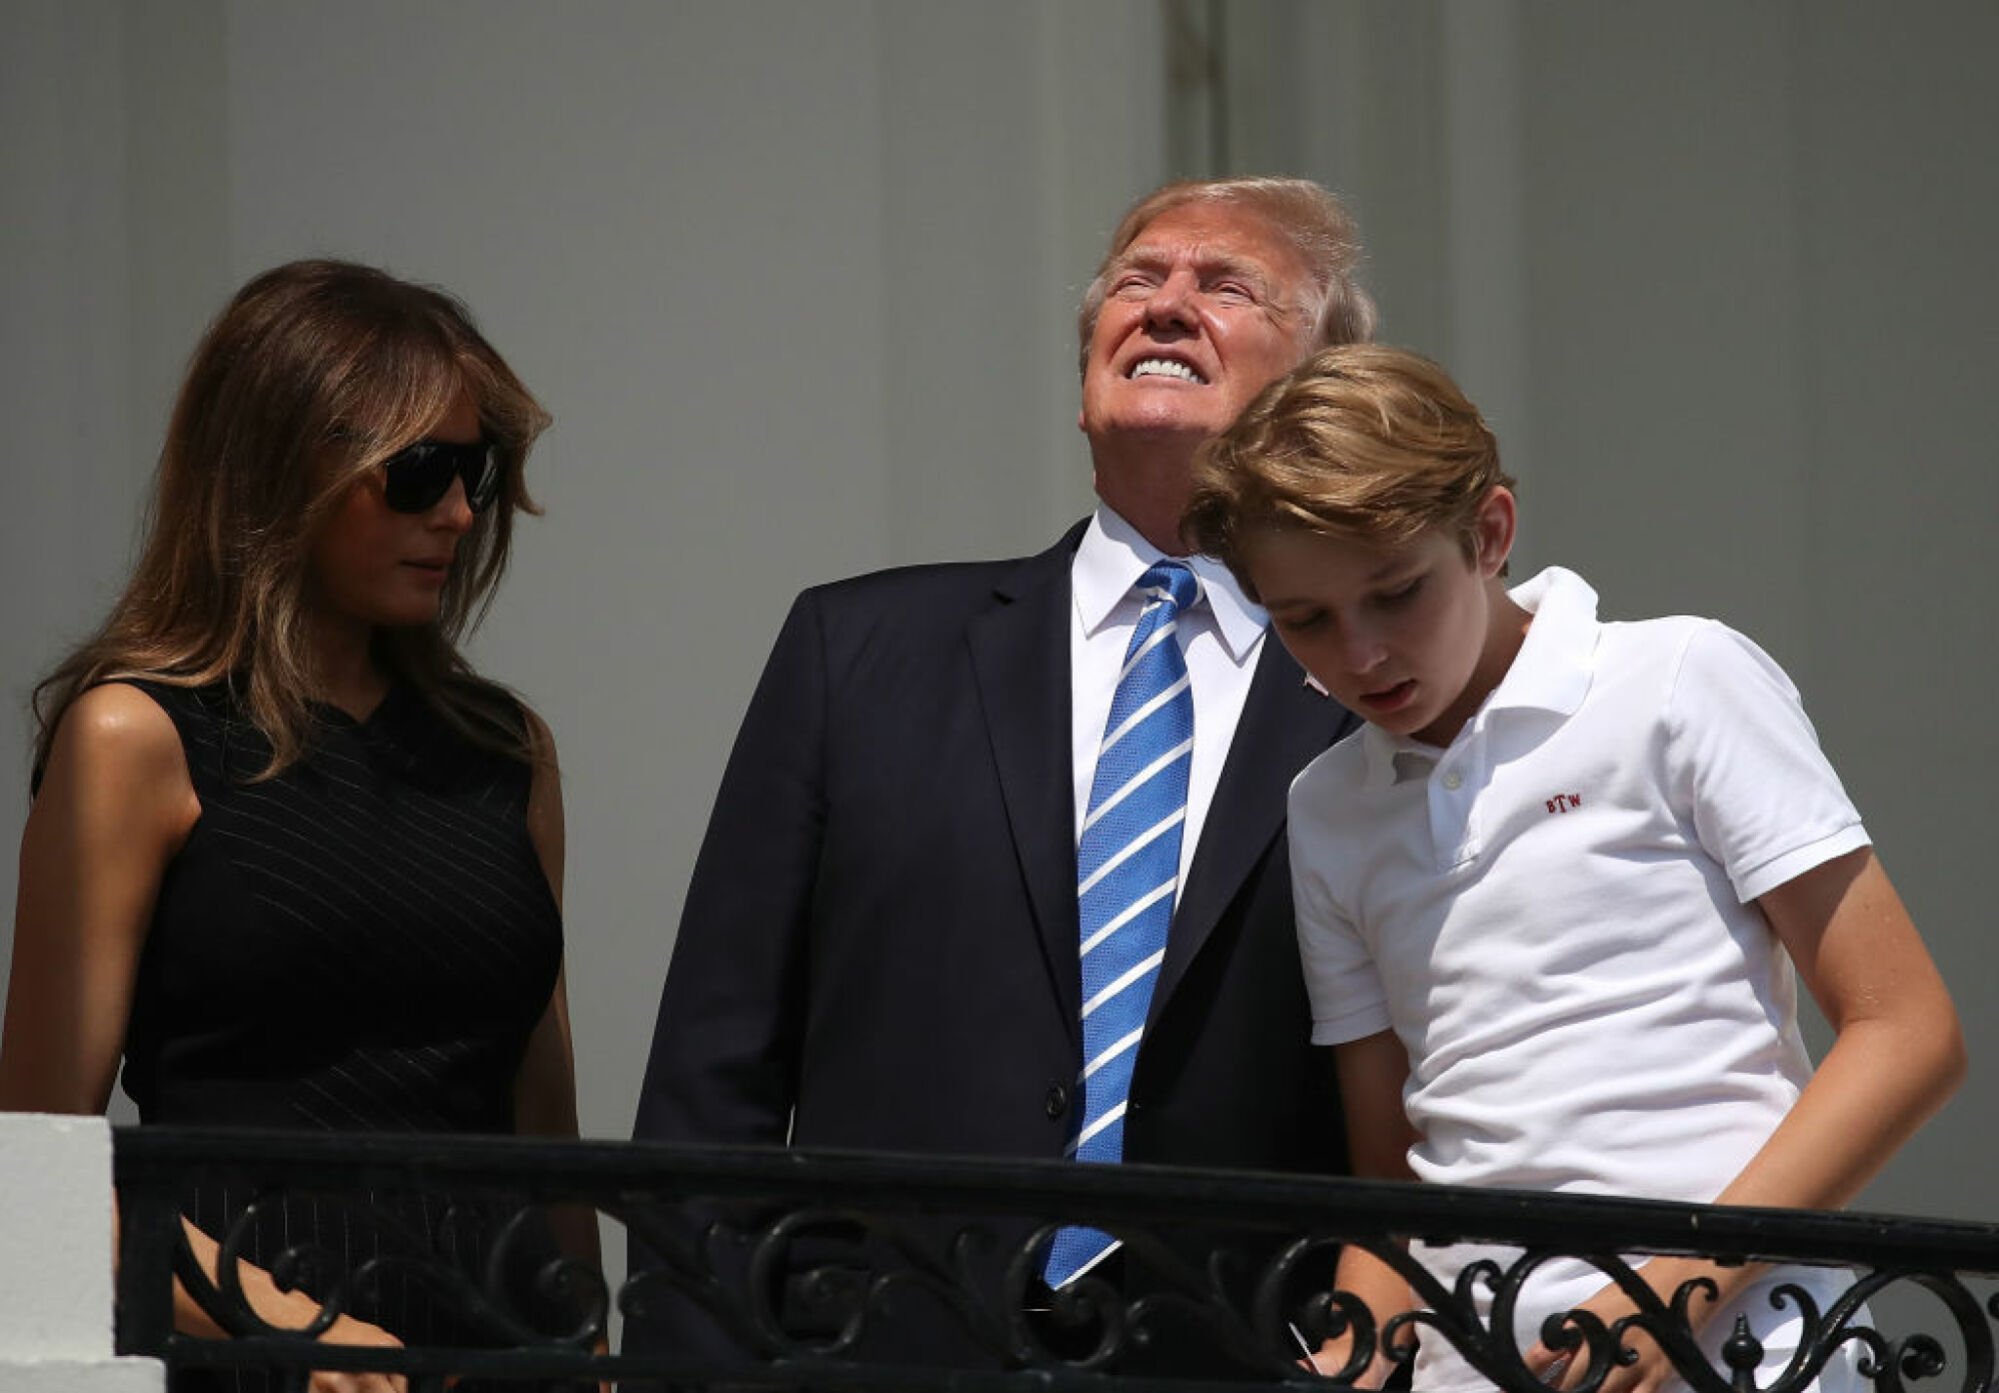 Le président Donald Trump plisse les yeux pendant l'éclipse solaire